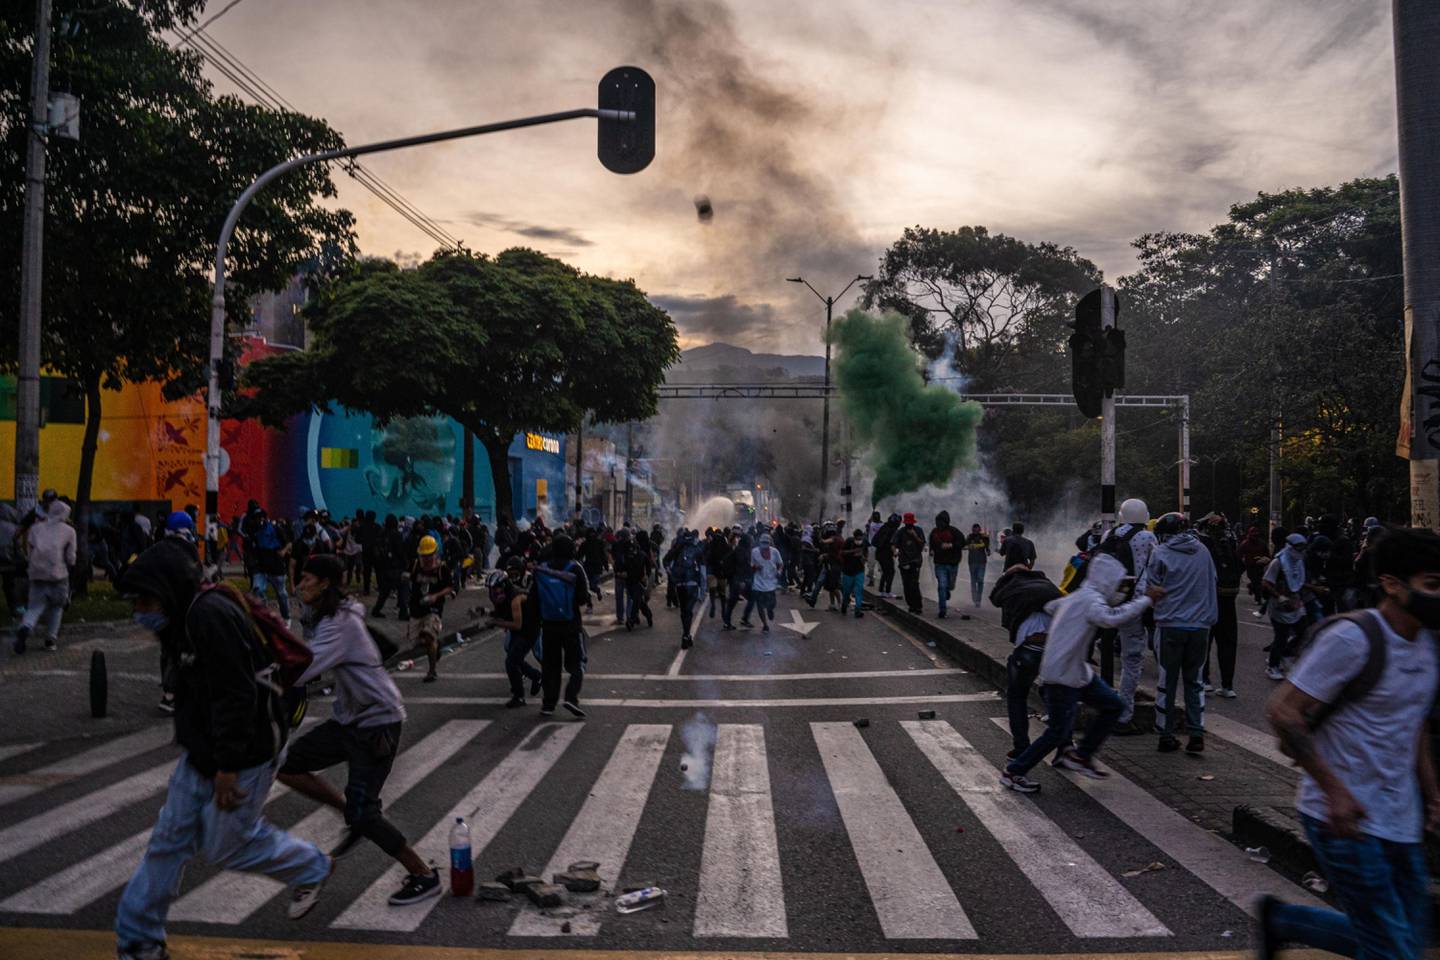 Los manifestantes huyen de los gases lacrimógenos mientras chocan con la Policía antidisturbios durante las protestas en Medellín, Colombia, el sábado 22 de mayo de 2021. Las protestas a nivel nacional han continuado estallando en Colombia durante más de 3 semanas, mientras el Gobierno enfrenta una ola de críticas por su uso de tácticas policiales de mano dura.